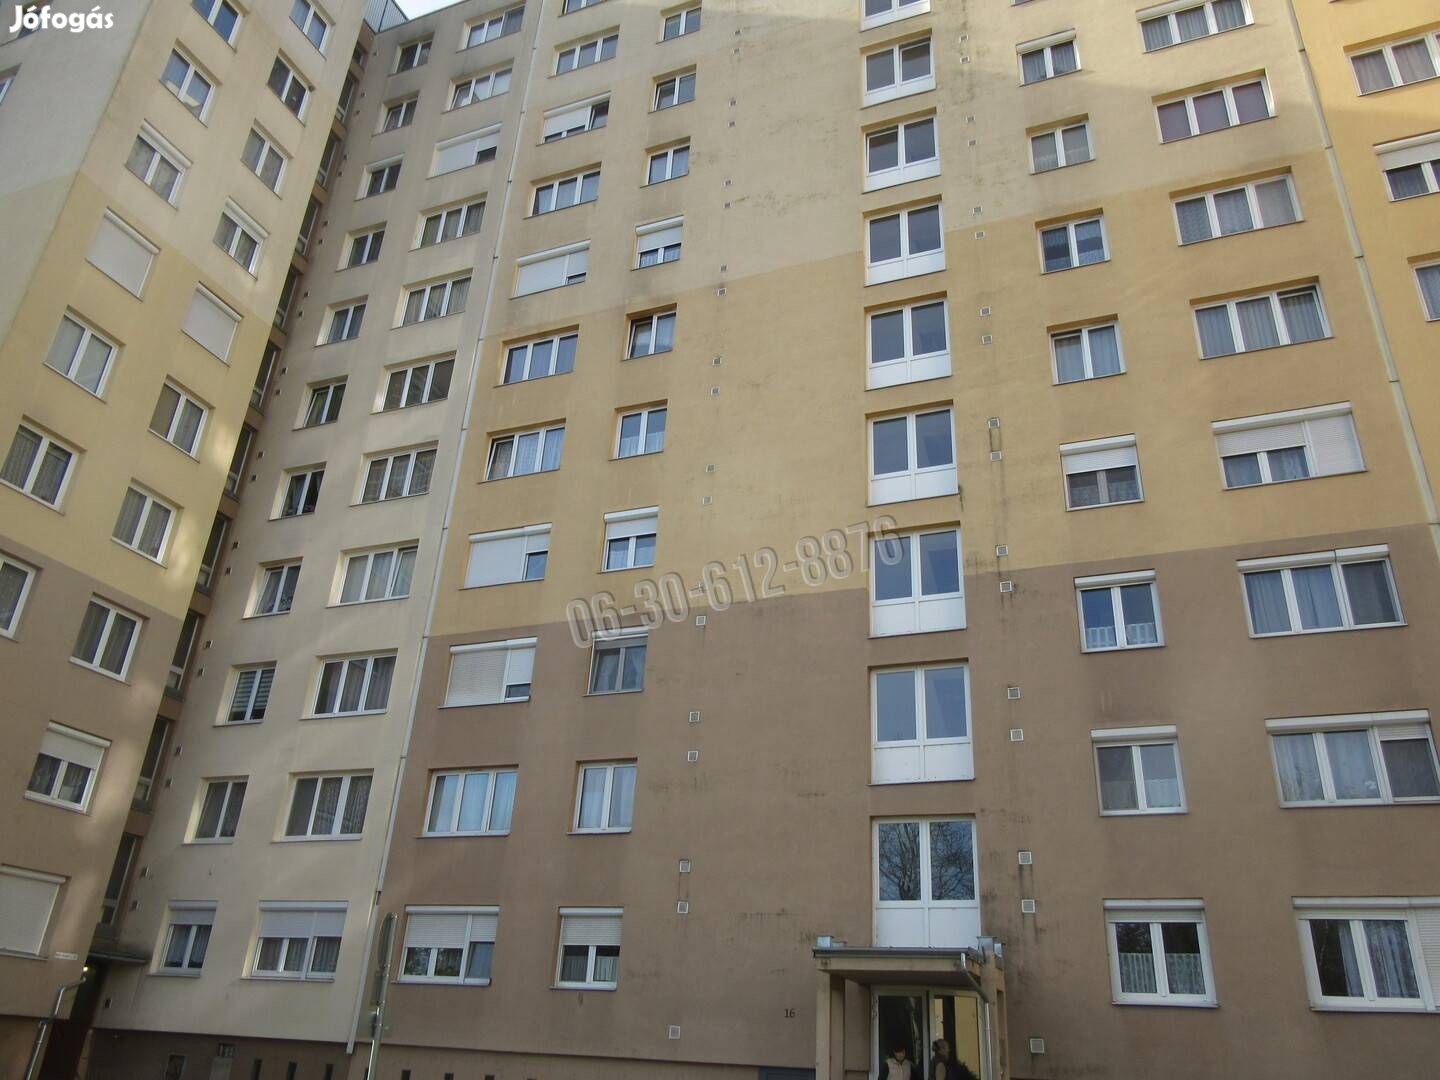 Eladó lakás, Szombathely Derkovits lakótelep, Bem József utca, 2 3_rji